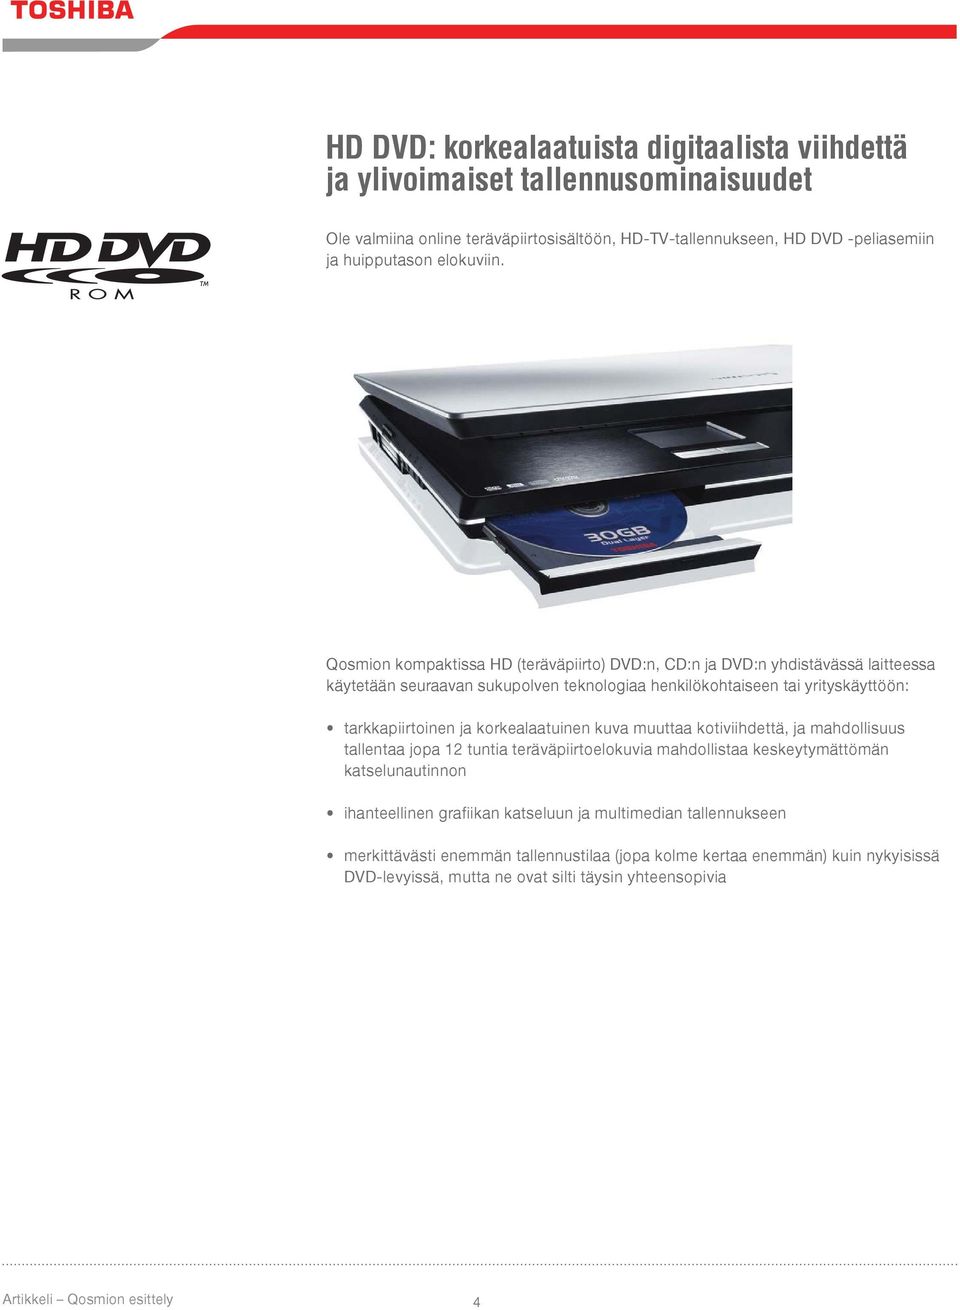 Qosmion kompaktissa HD (teräväpiirto) DVD:n, CD:n ja DVD:n yhdistävässä laitteessa käytetään seuraavan sukupolven teknologiaa henkilökohtaiseen tai yrityskäyttöön: tarkkapiirtoinen ja